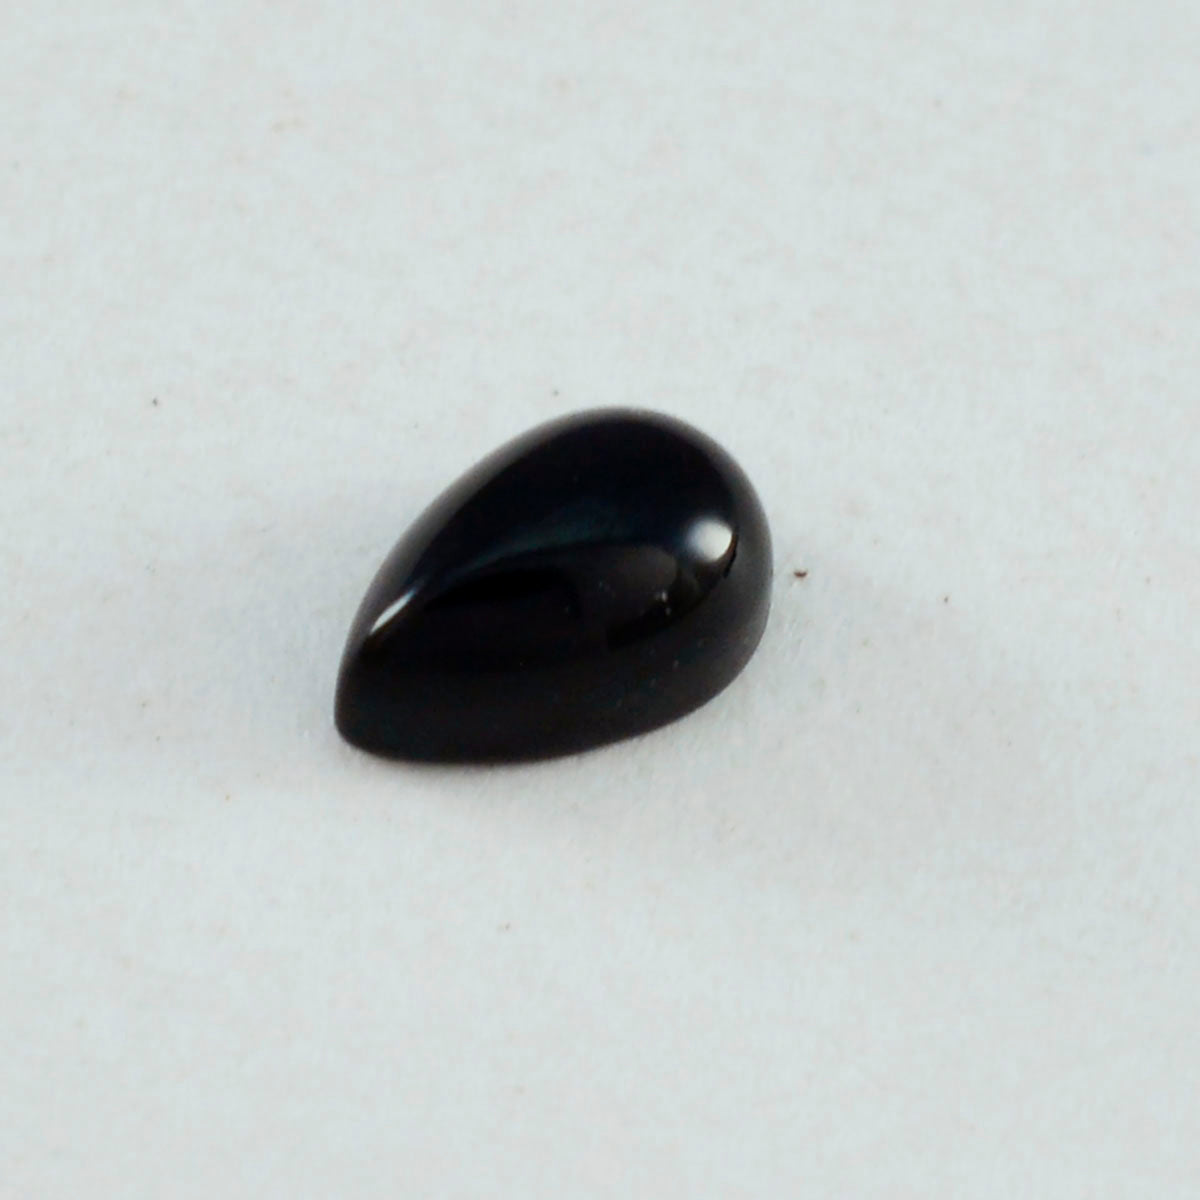 riyogems 1 шт. черный оникс кабошон 7x10 мм грушевидной формы драгоценный камень удивительного качества